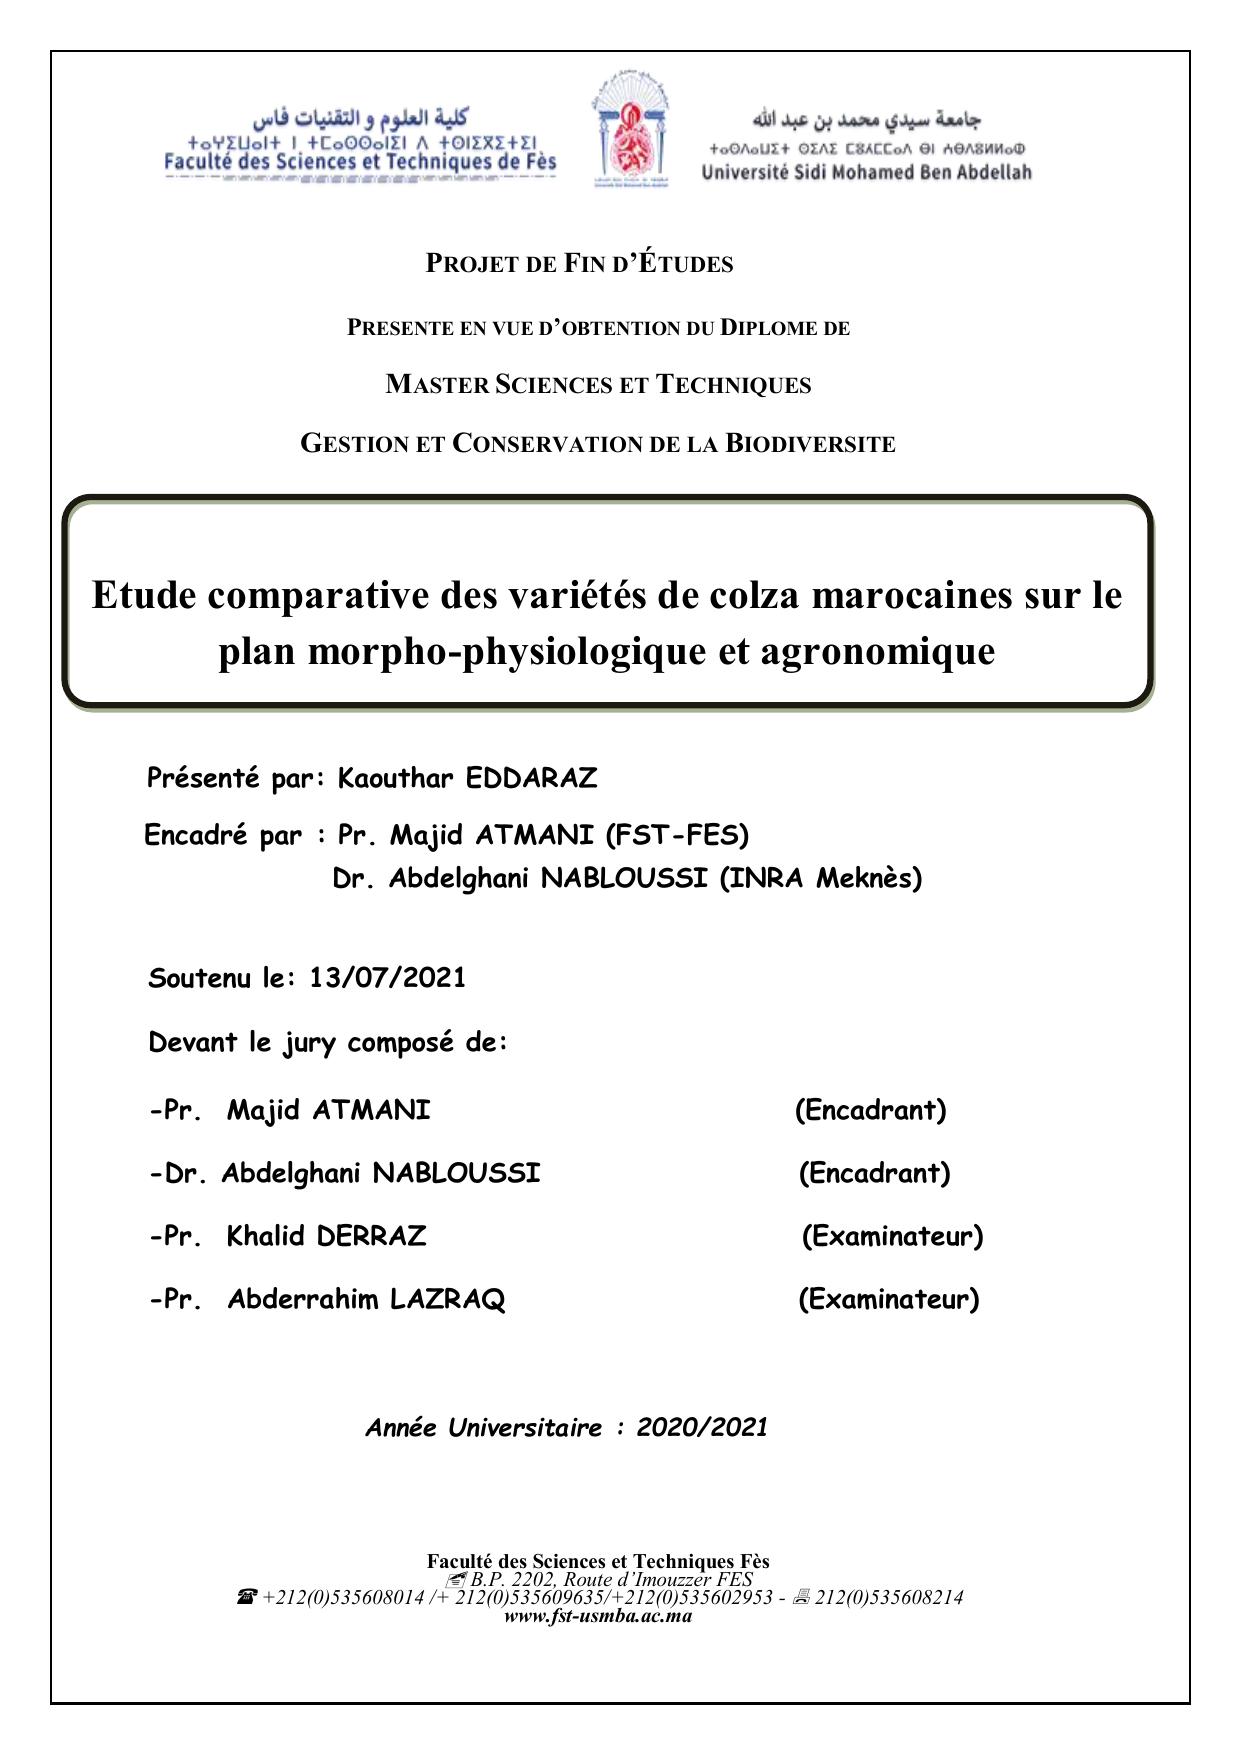 Etude comparative des variétés de colza marocaines sur le plan morpho-physiologique et agronomique